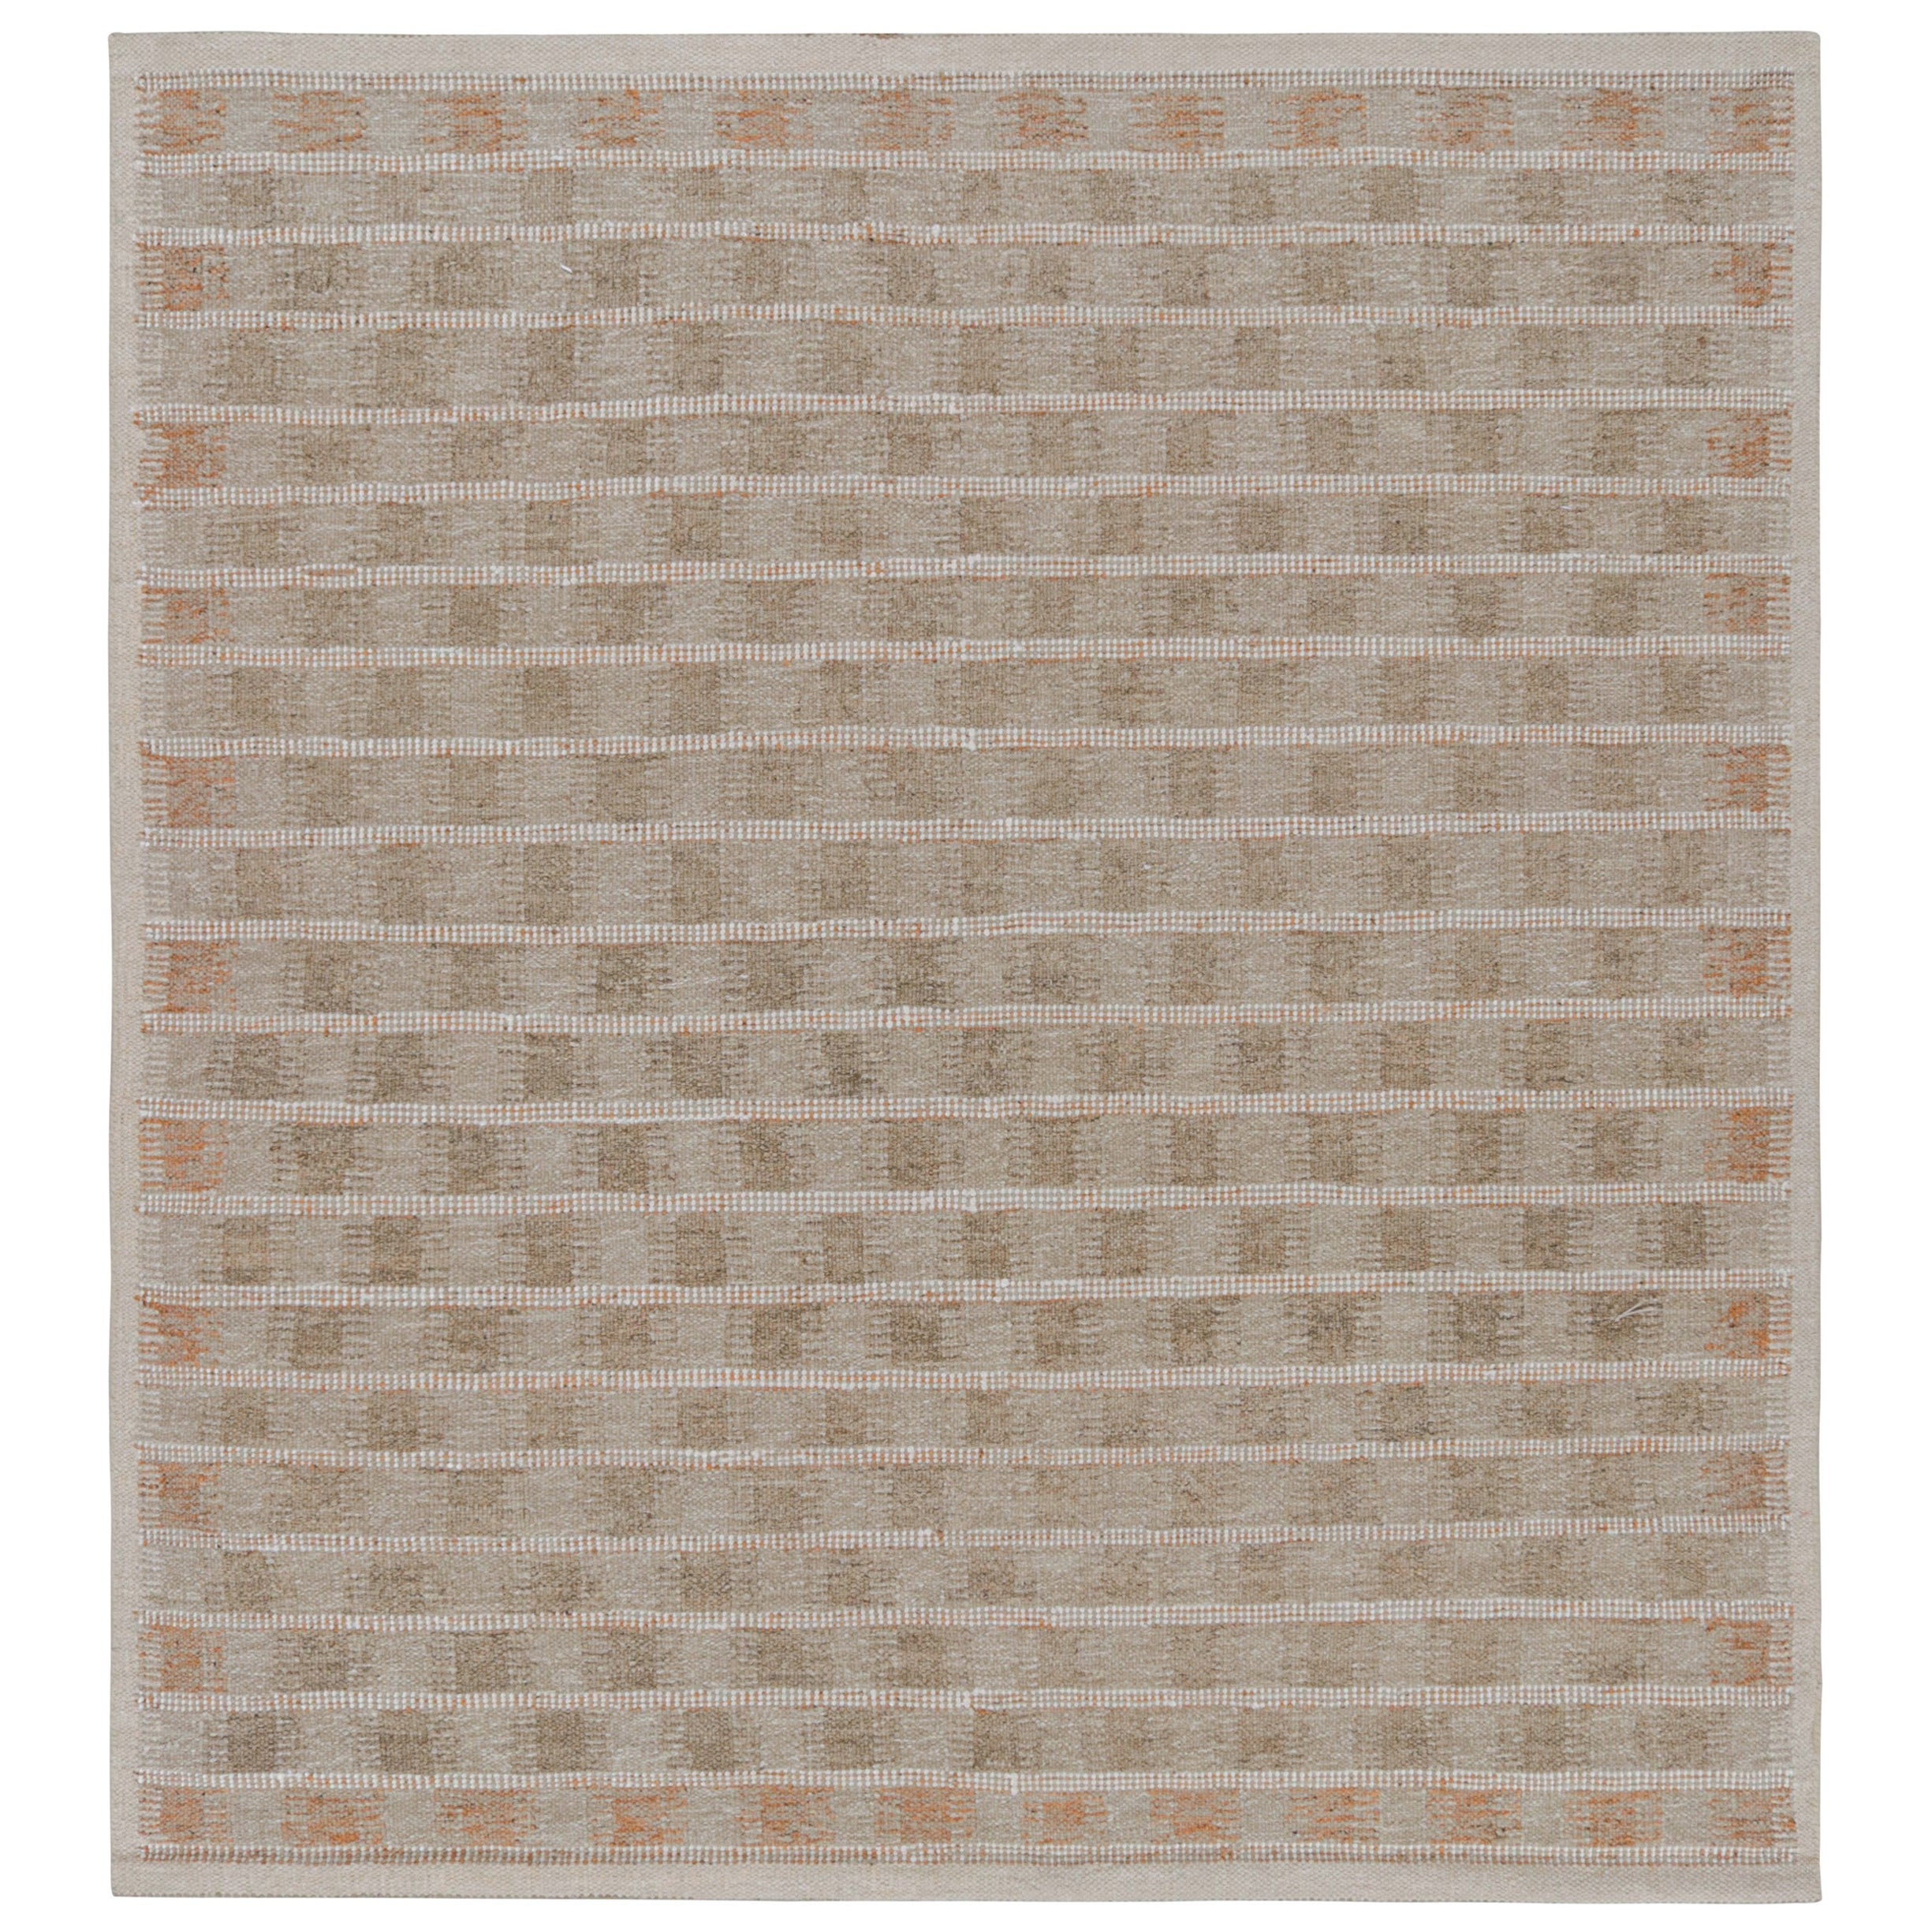 Rug & Kilim's quadratischer Teppich im skandinavischen Stil in Beige-Braun mit geometrischen Mustern